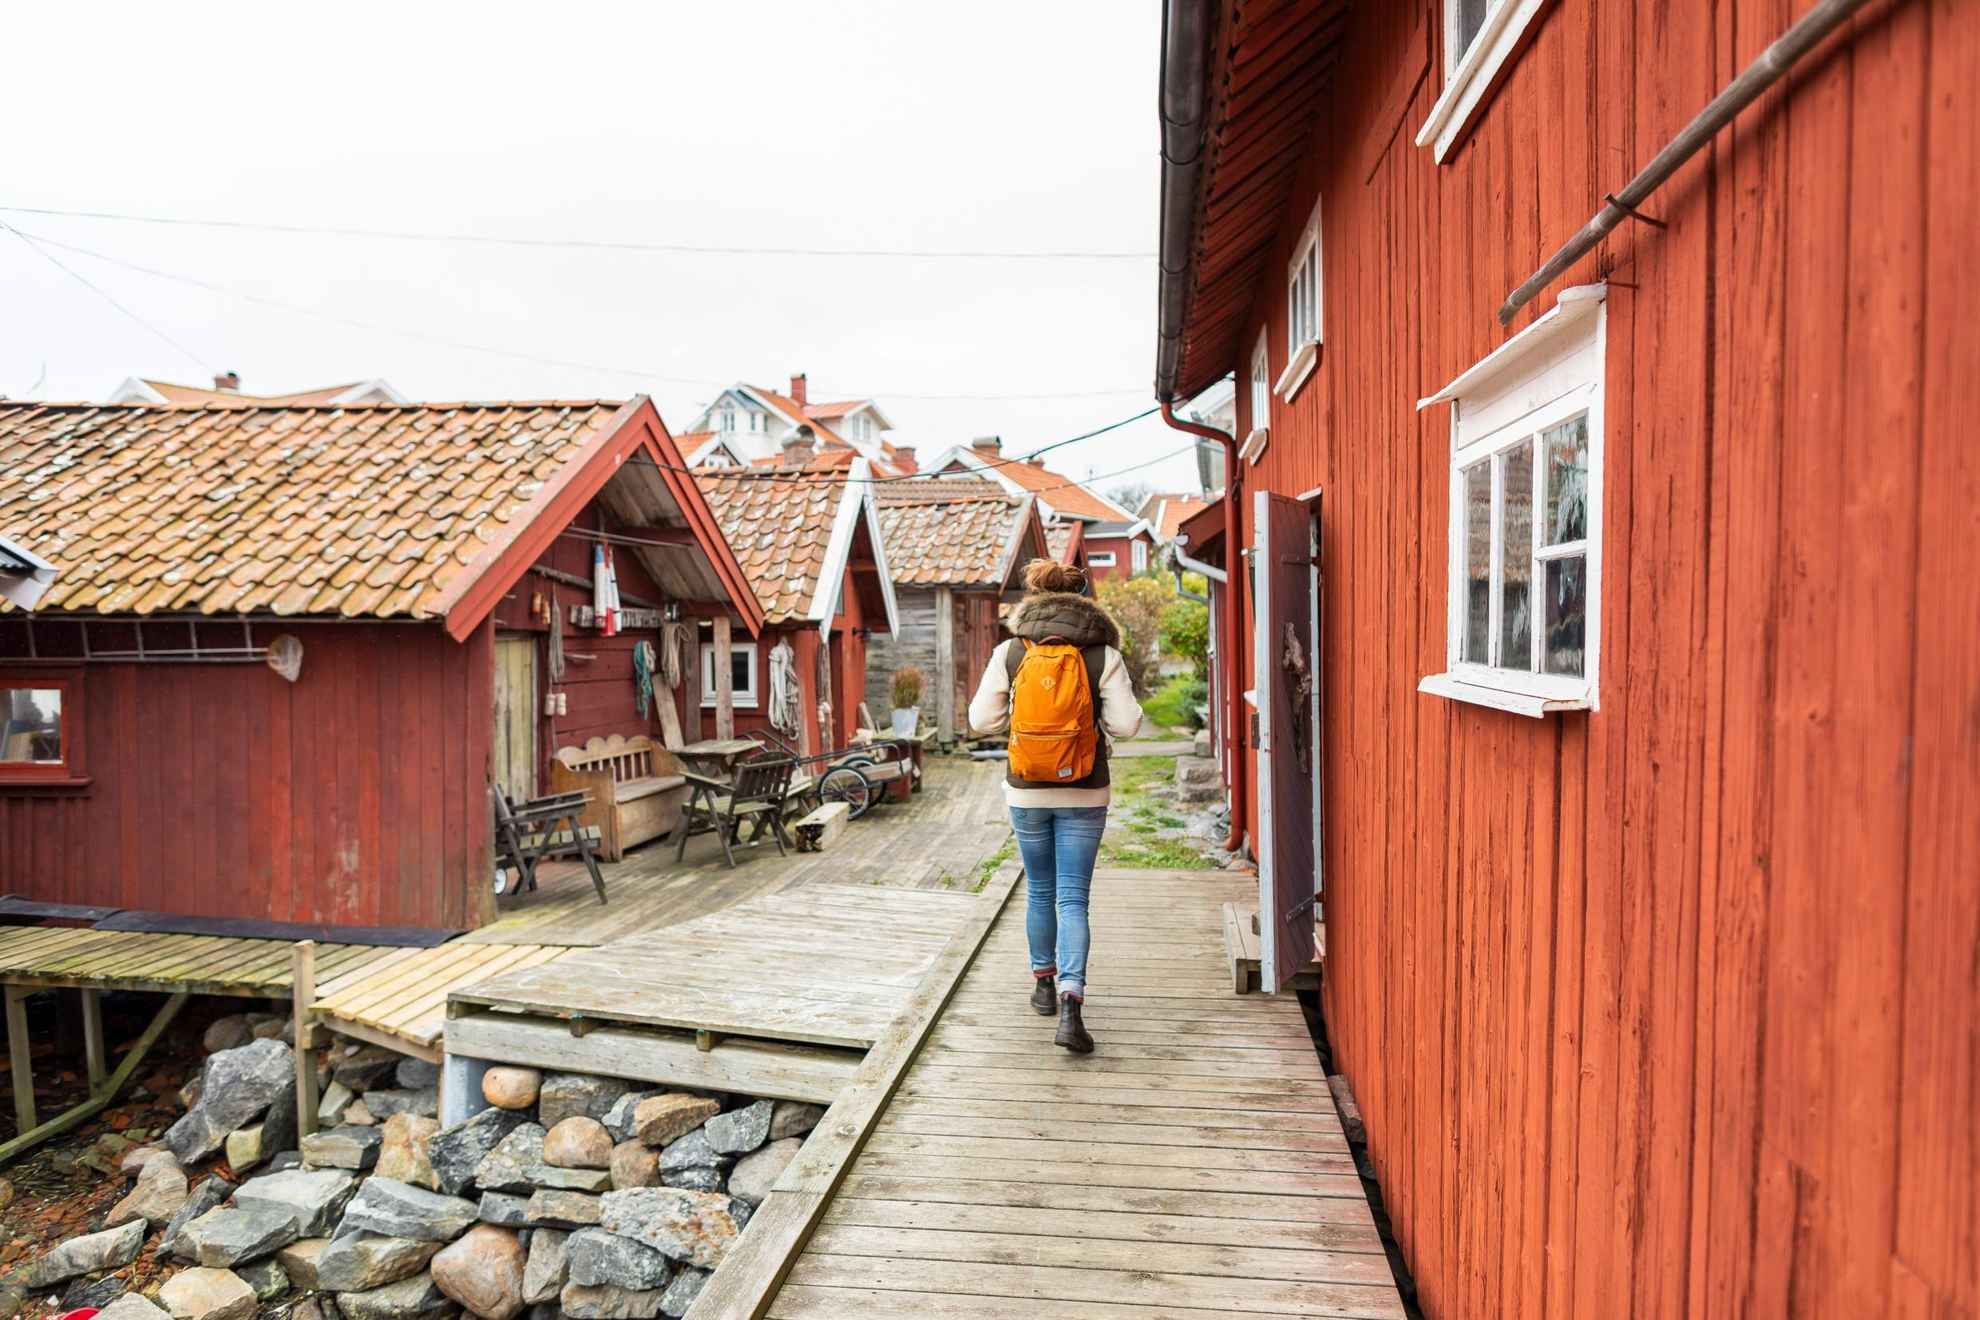 Une personne avec un sac à dos se promène parmi des maisons en bois rouges.